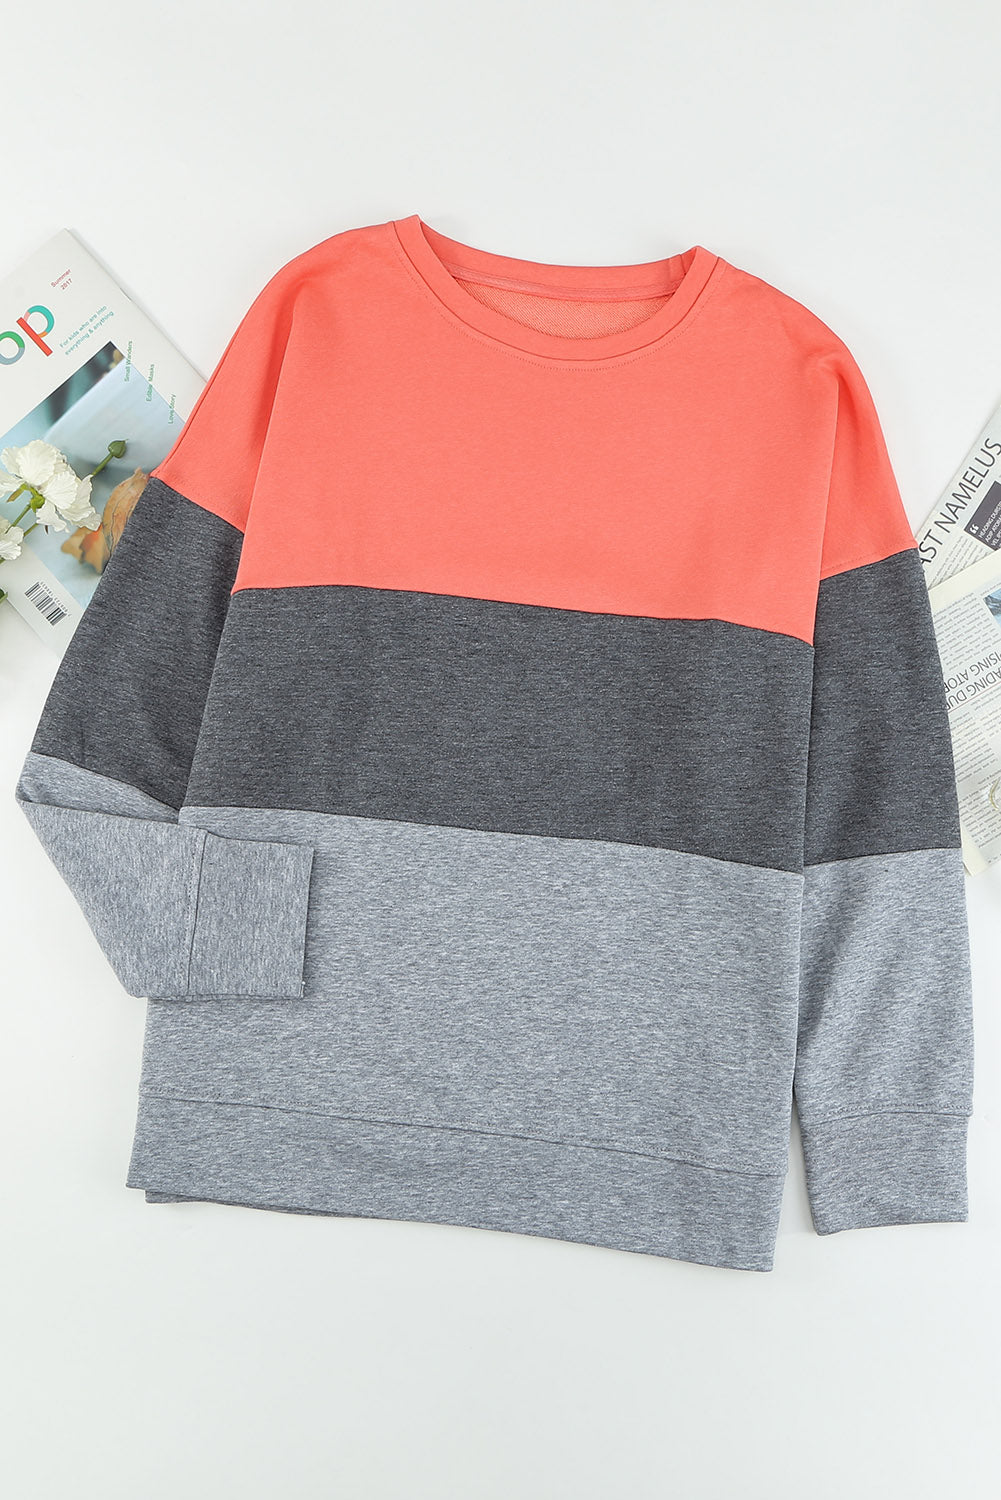 Gray Crew Neck Colorblock Plus Size Sweatshirt